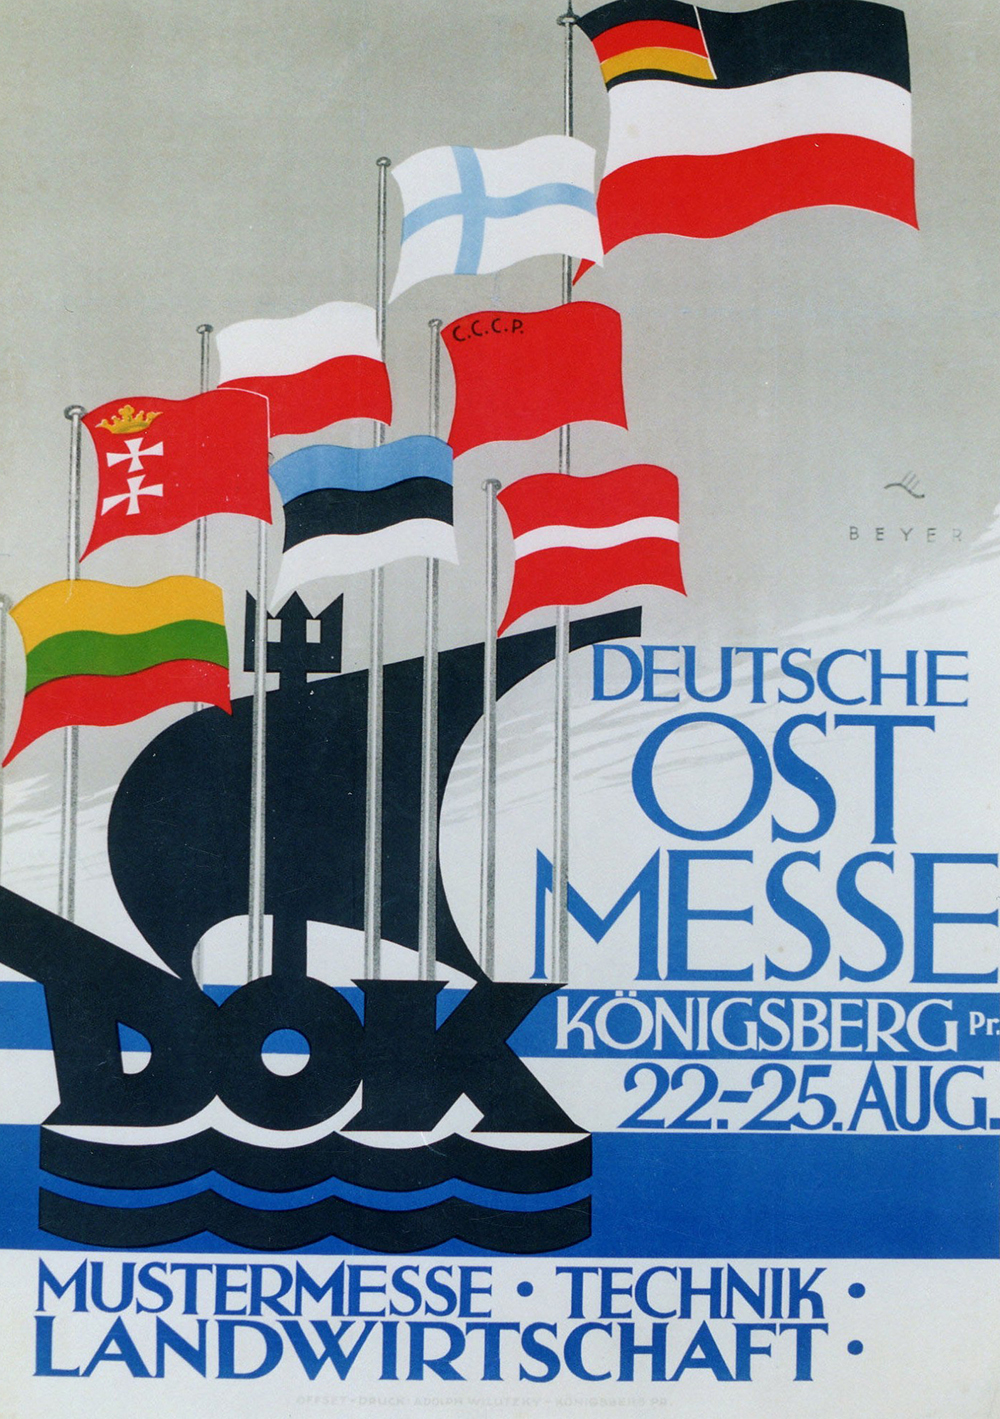  Plakat zur deutschen Ostmesse von 1926 (Ausschnitt). © Ostpreußisches Landesmuseum Lüneburg	